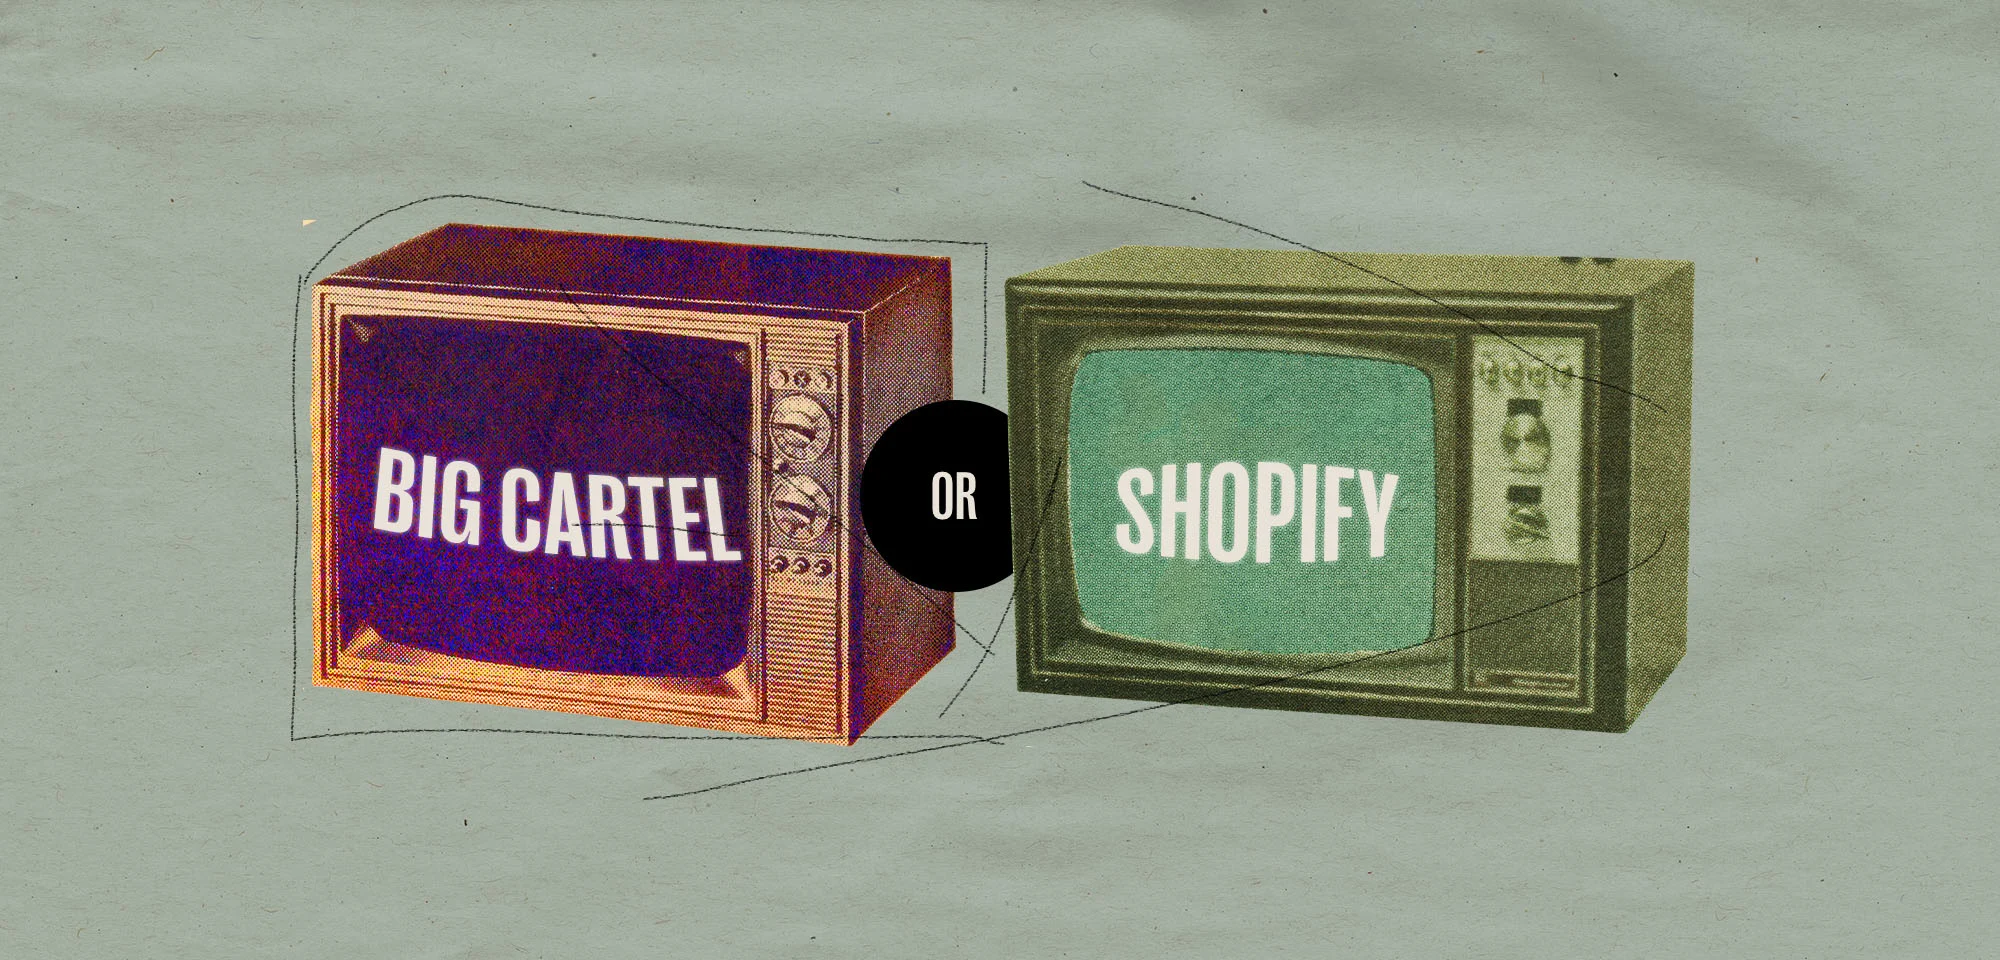 Big Cartel or Shopify?